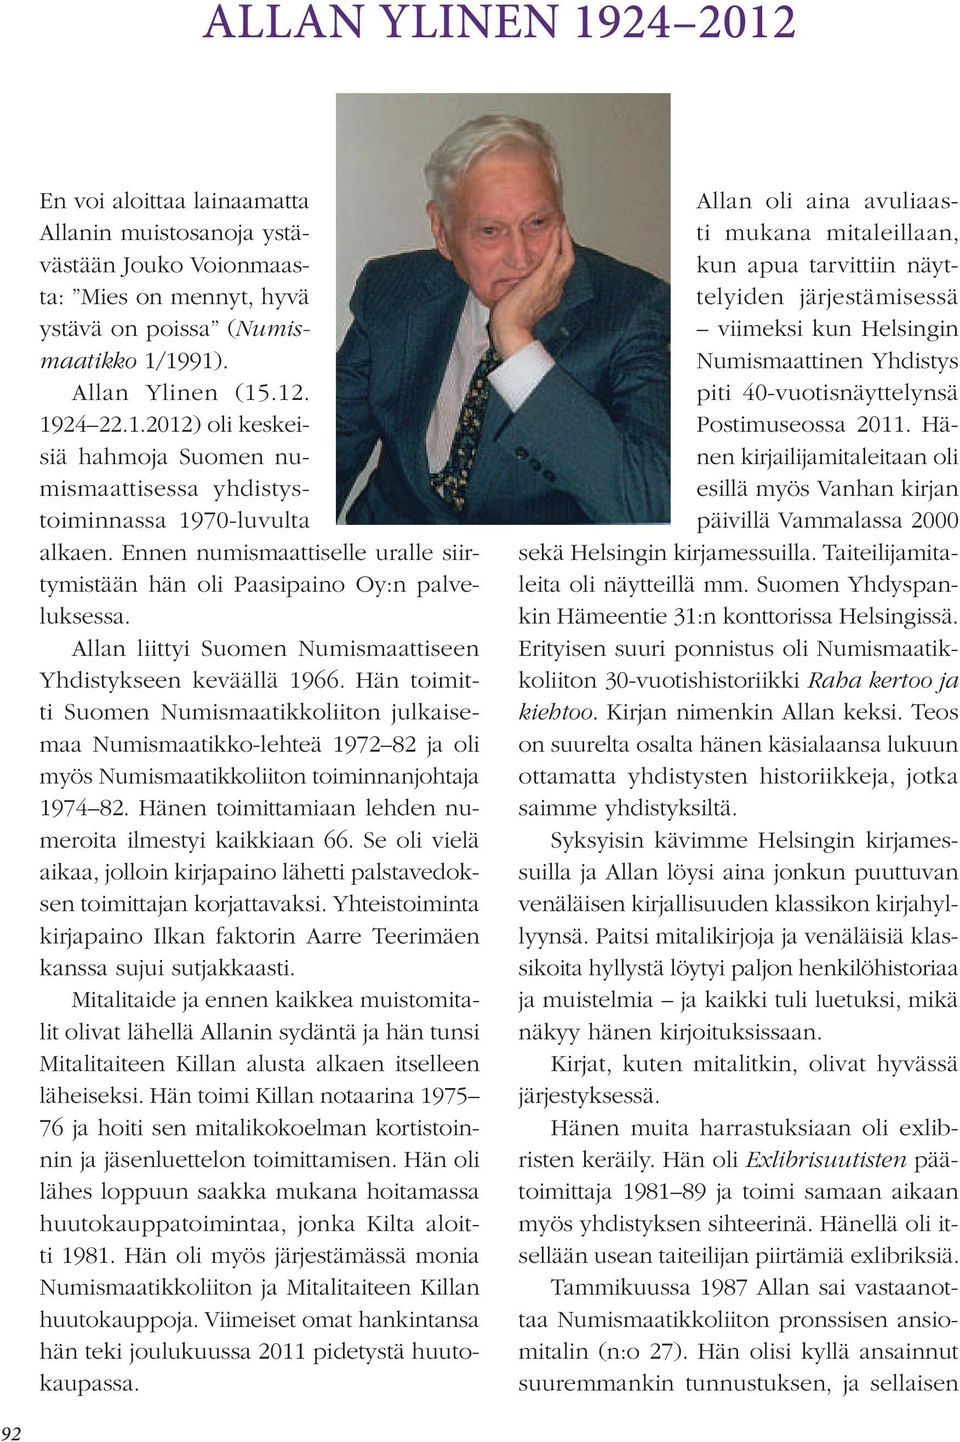 Hän toimitti Suomen Numismaatikkoliiton julkaisemaa Numismaatikko-lehteä 1972 82 ja oli myös Numismaatikkoliiton toiminnanjohtaja 1974 82. Hänen toimittamiaan lehden numeroita ilmestyi kaikkiaan 66.